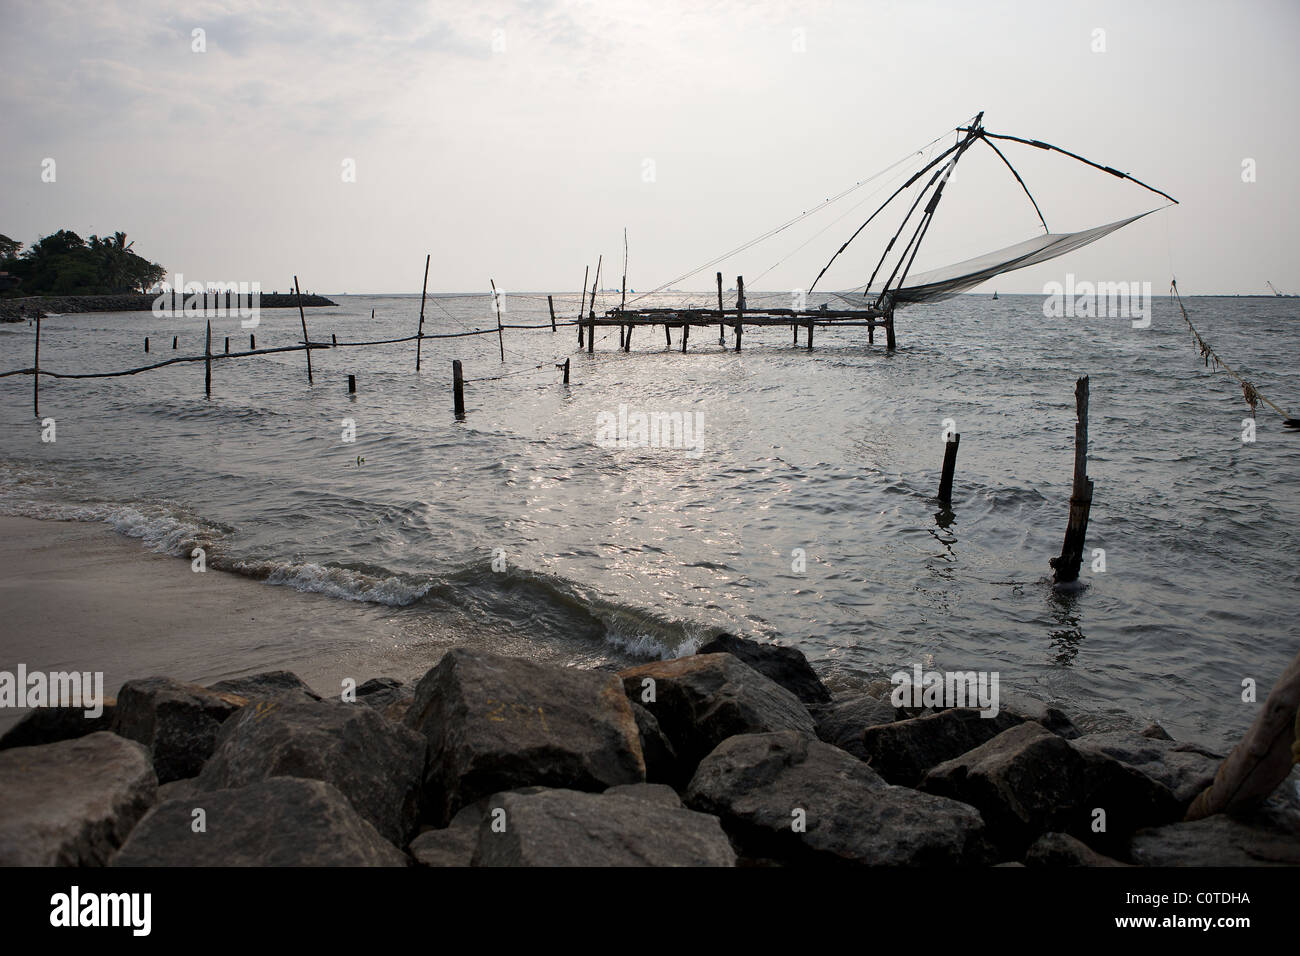 Traditionelle chinesische freitragend Fischernetz, Fort Cochin, Kerala, Indien. 15 Sekunden Exposition Stockfoto